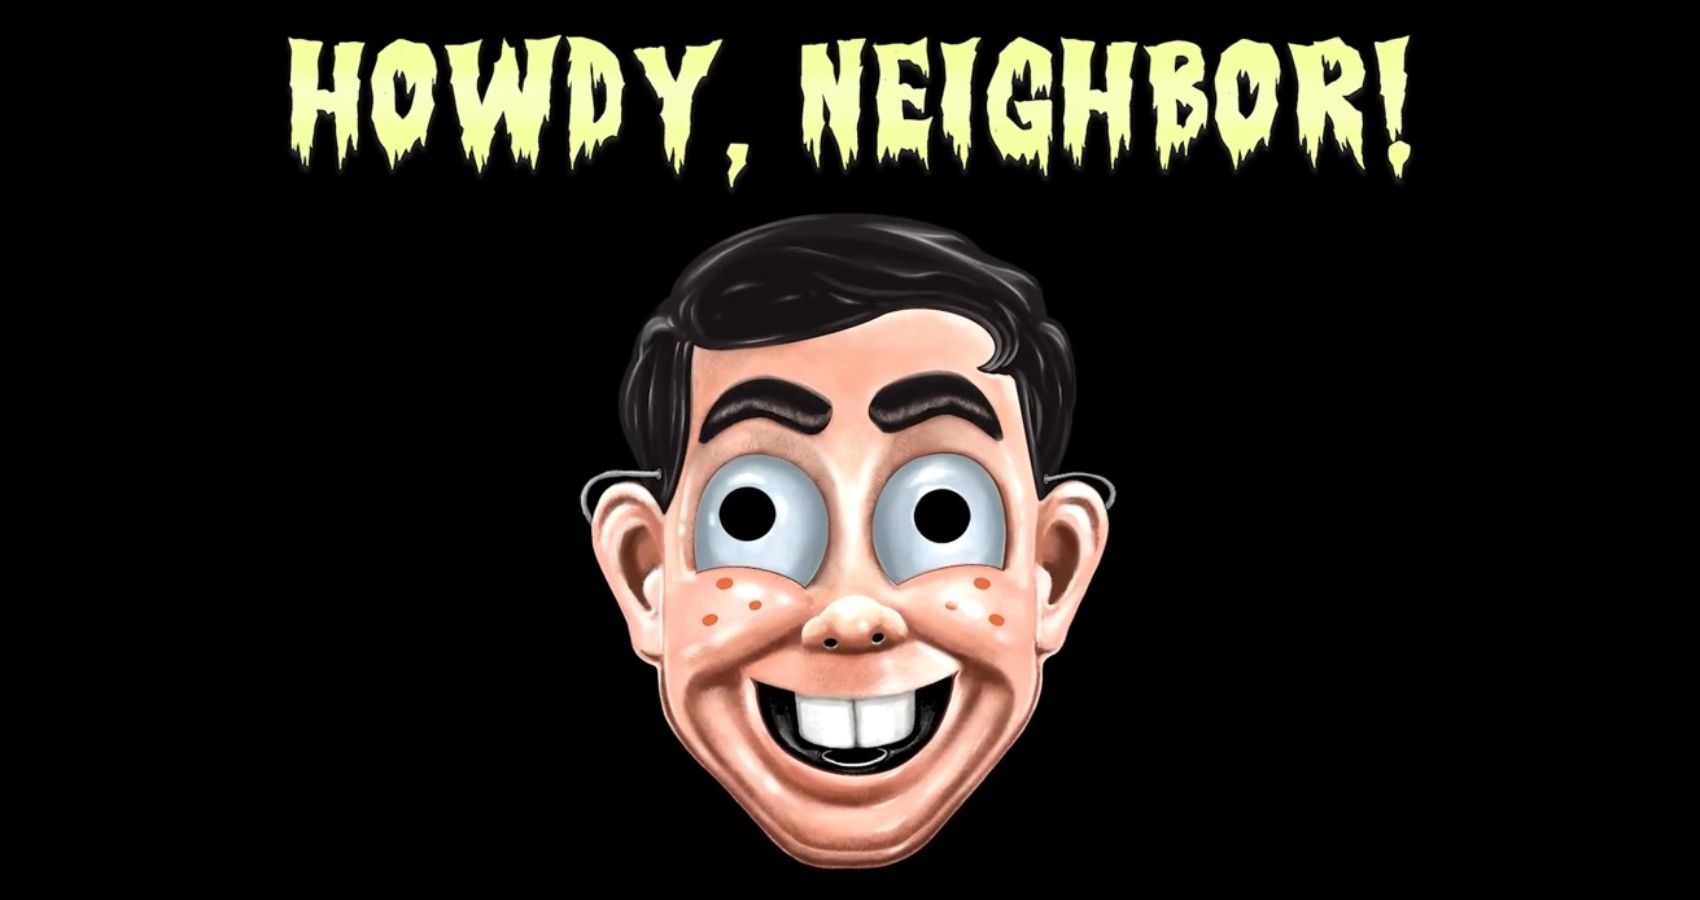 Howdy Neighbor